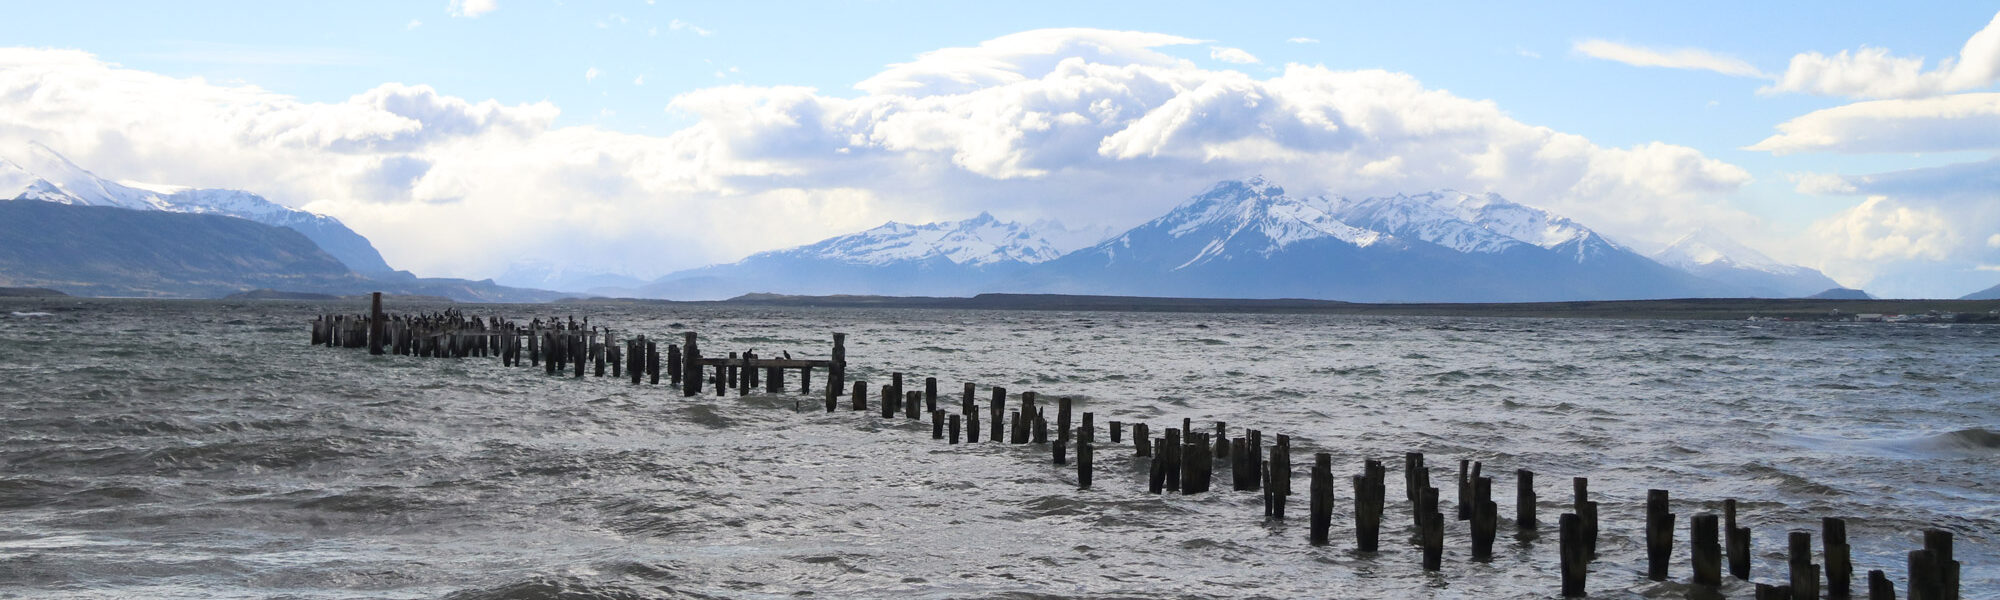 Patagonië - Puerto Natales